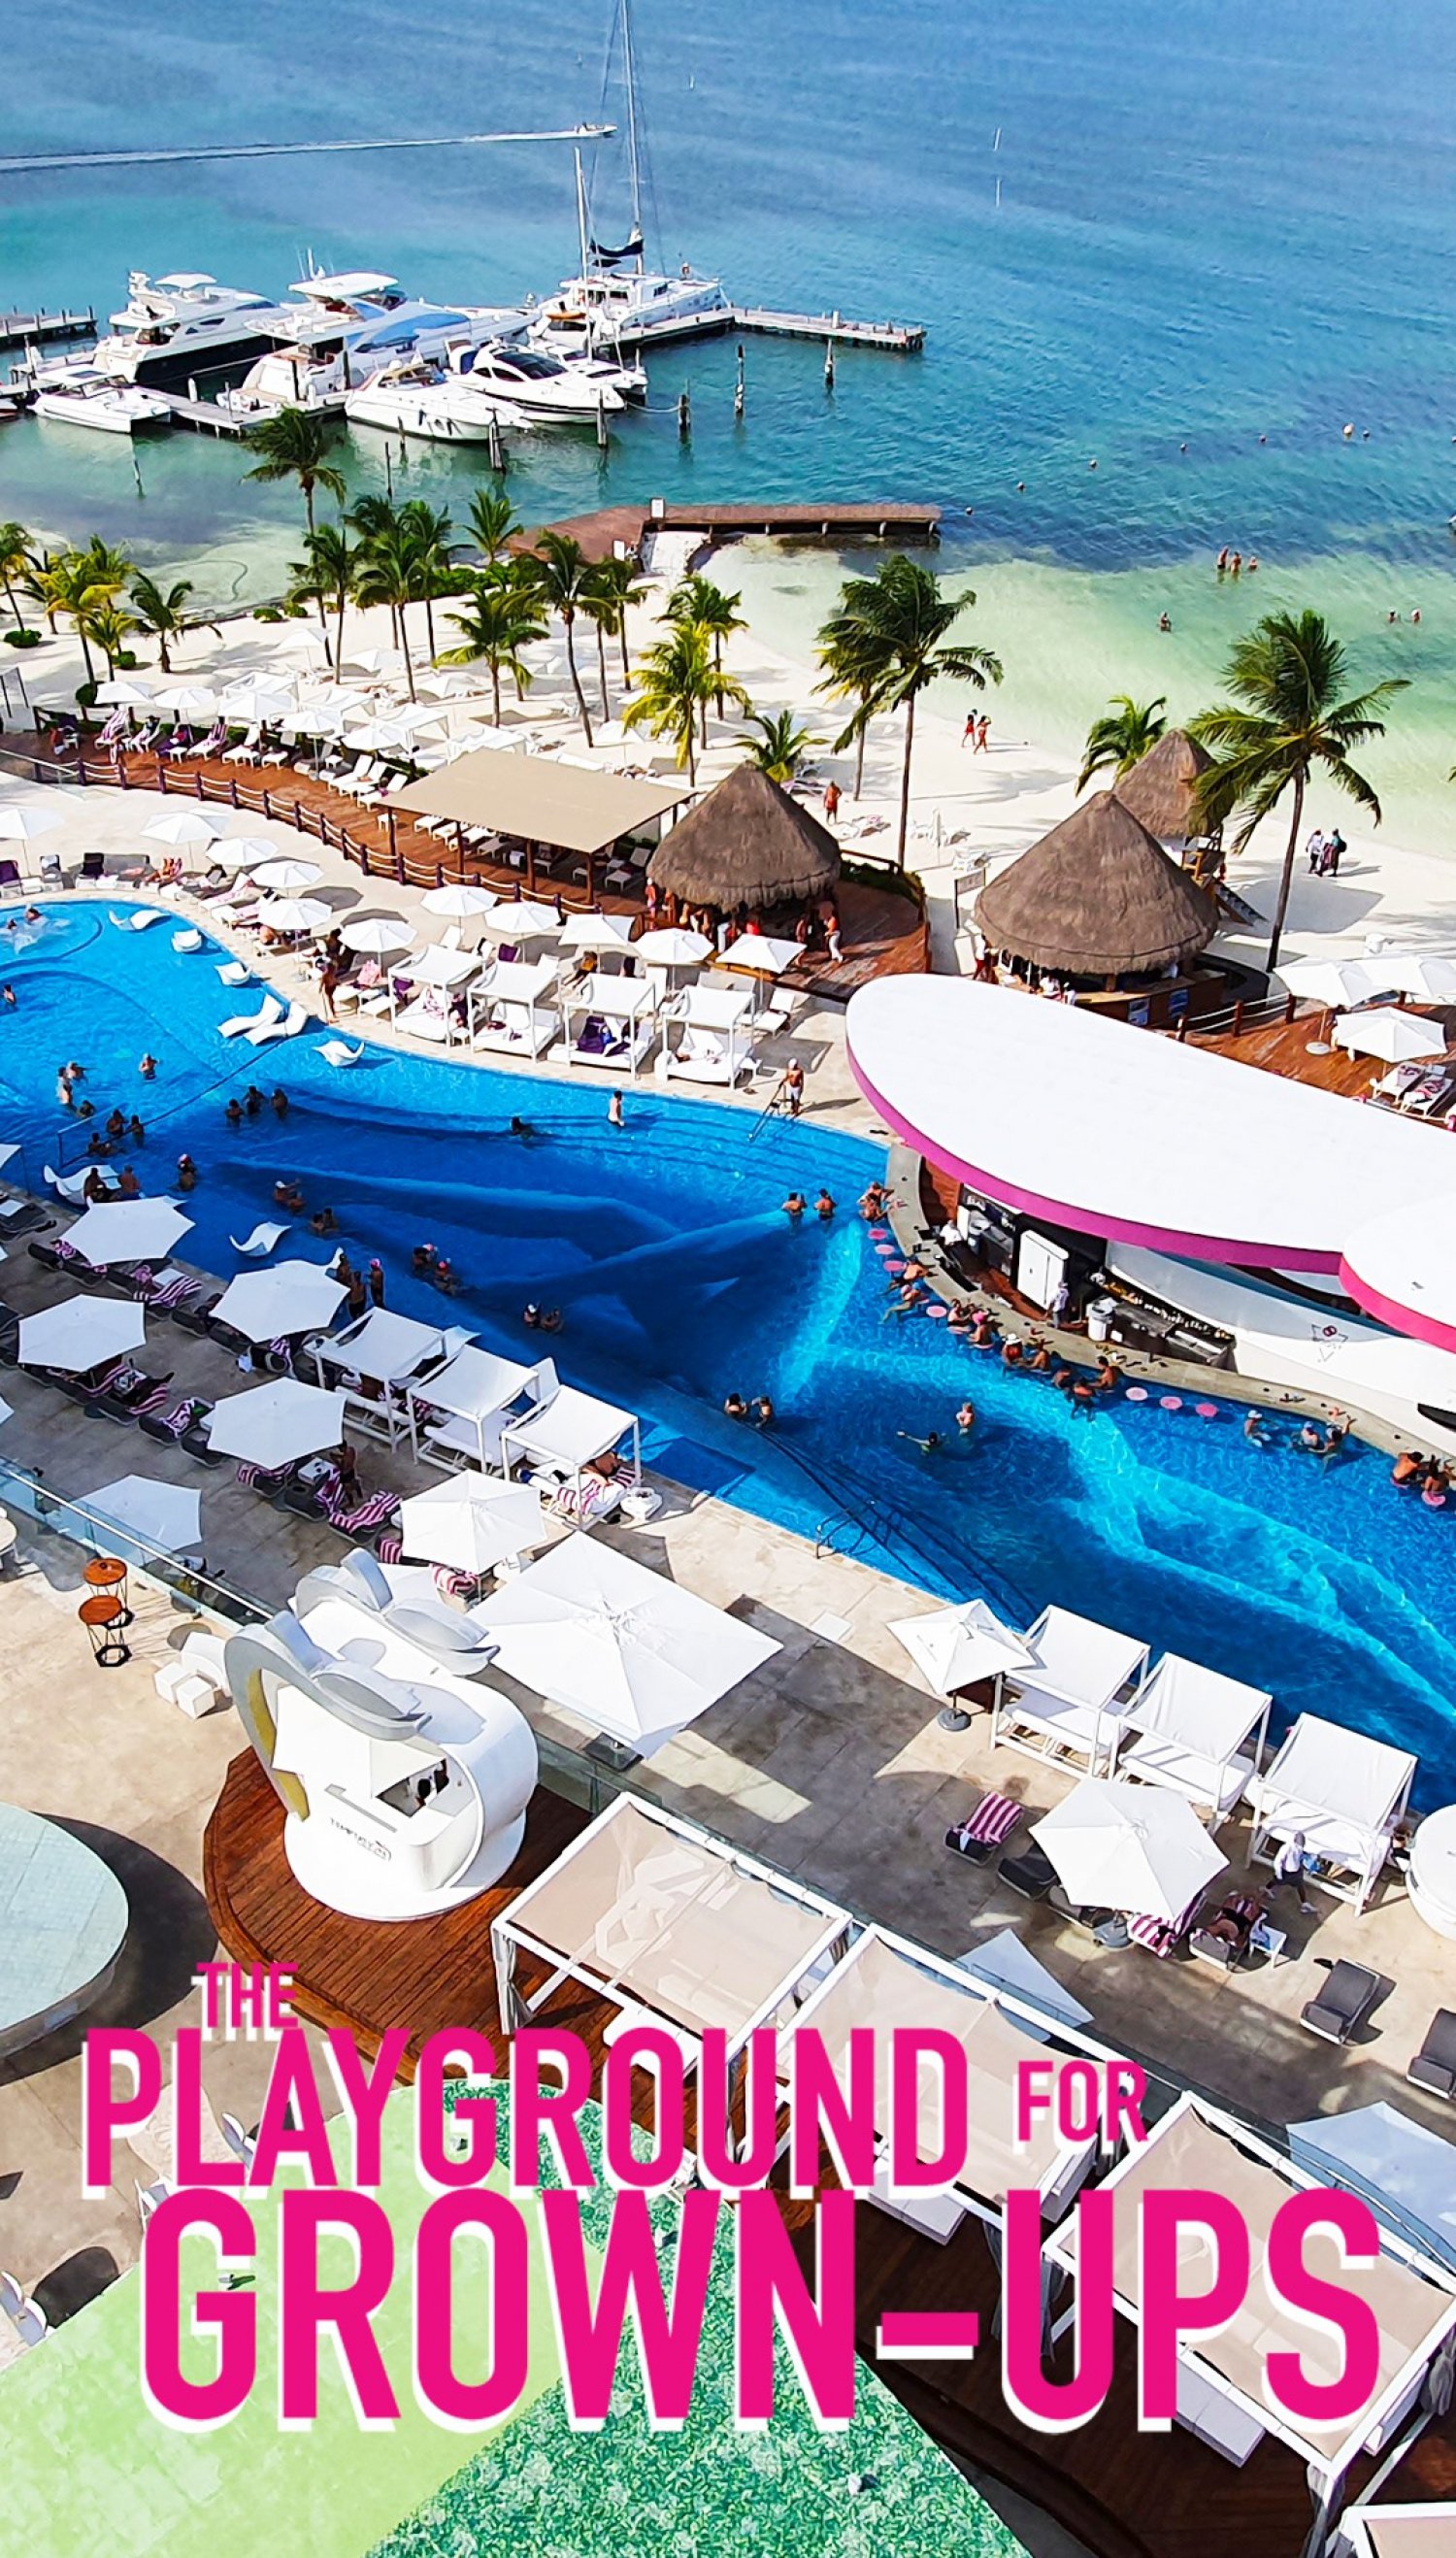 All inclusive hotels in Cancun